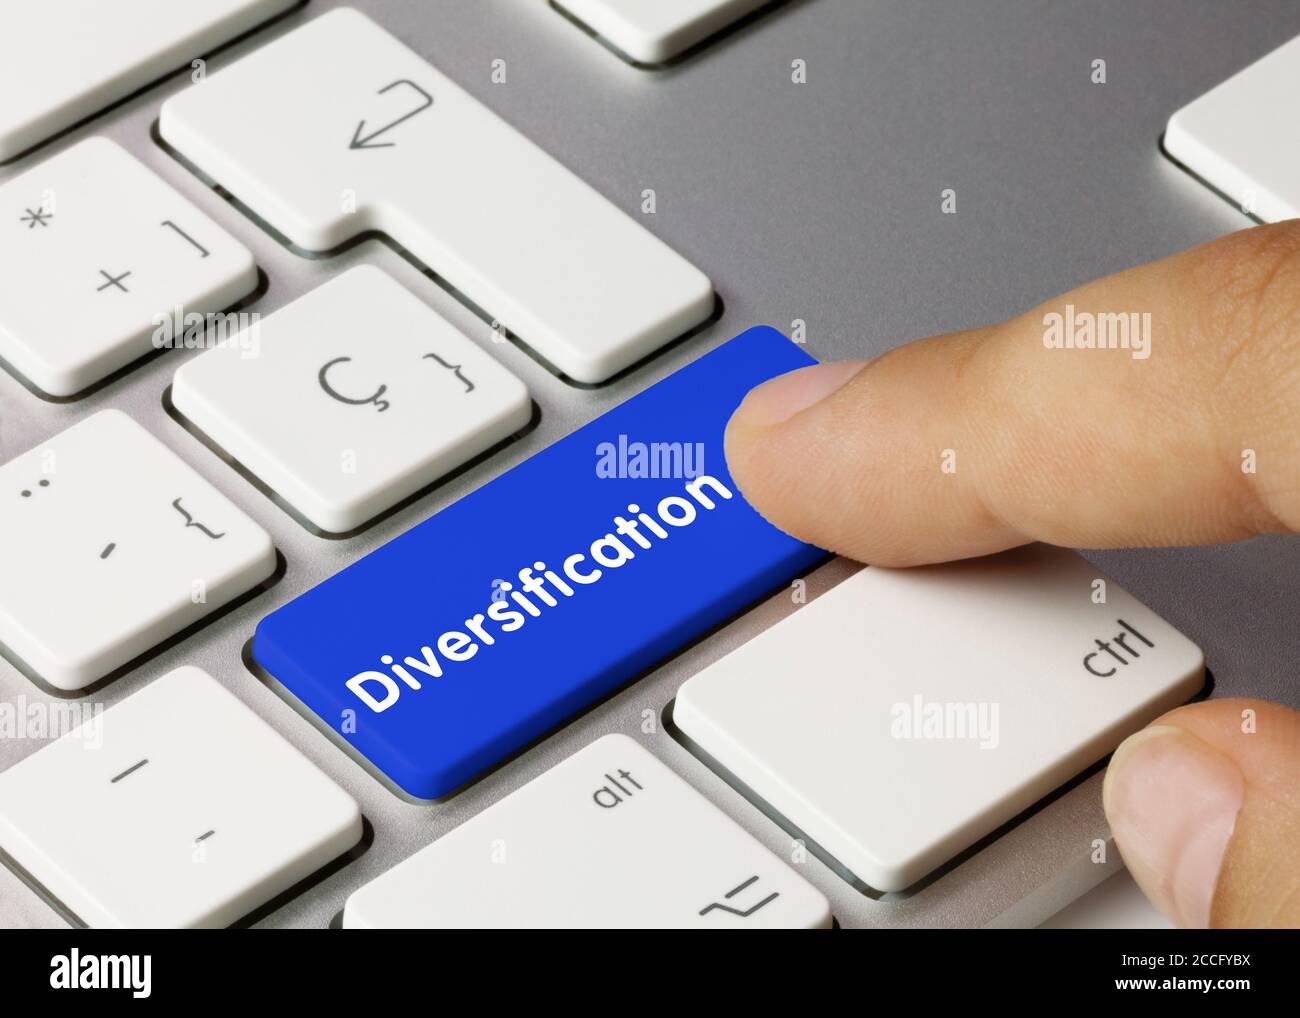 Diversifikation geschrieben auf Blue Key der metallischen Tastatur. Drücken Sie die Taste mit dem Finger. Stockfoto